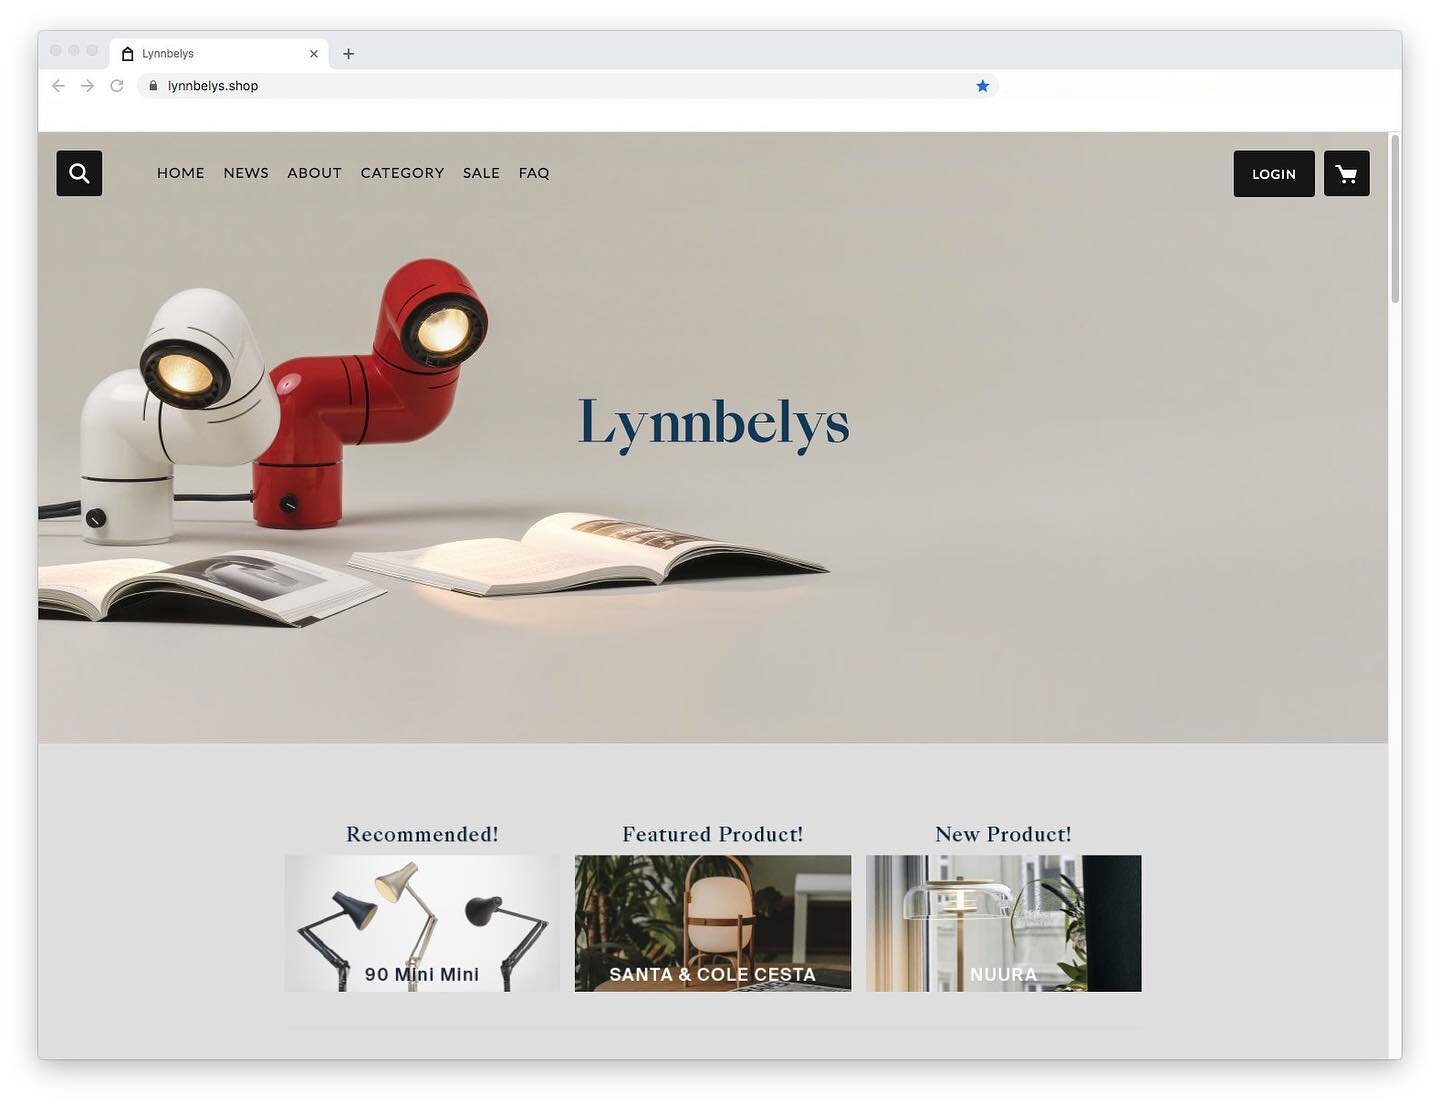 Lynnbelys online shop のプチリニューアルを行いました。新ブランドの取り扱いに伴いトップページの装いを新たにし、オフィシャルサイトと連動したデザインにしています。﻿
﻿
﻿
﻿
※clakdesignではコロナウイルス対策に伴い﻿
オンラインミーティングも実施しております。﻿
ご希望の際は、お気軽に問い合わせください。﻿
﻿
﻿
#lynnbelys ﻿
#lynninkoop﻿
#onlineshop﻿
#webdesign ﻿
#designstudio ﻿
#caked